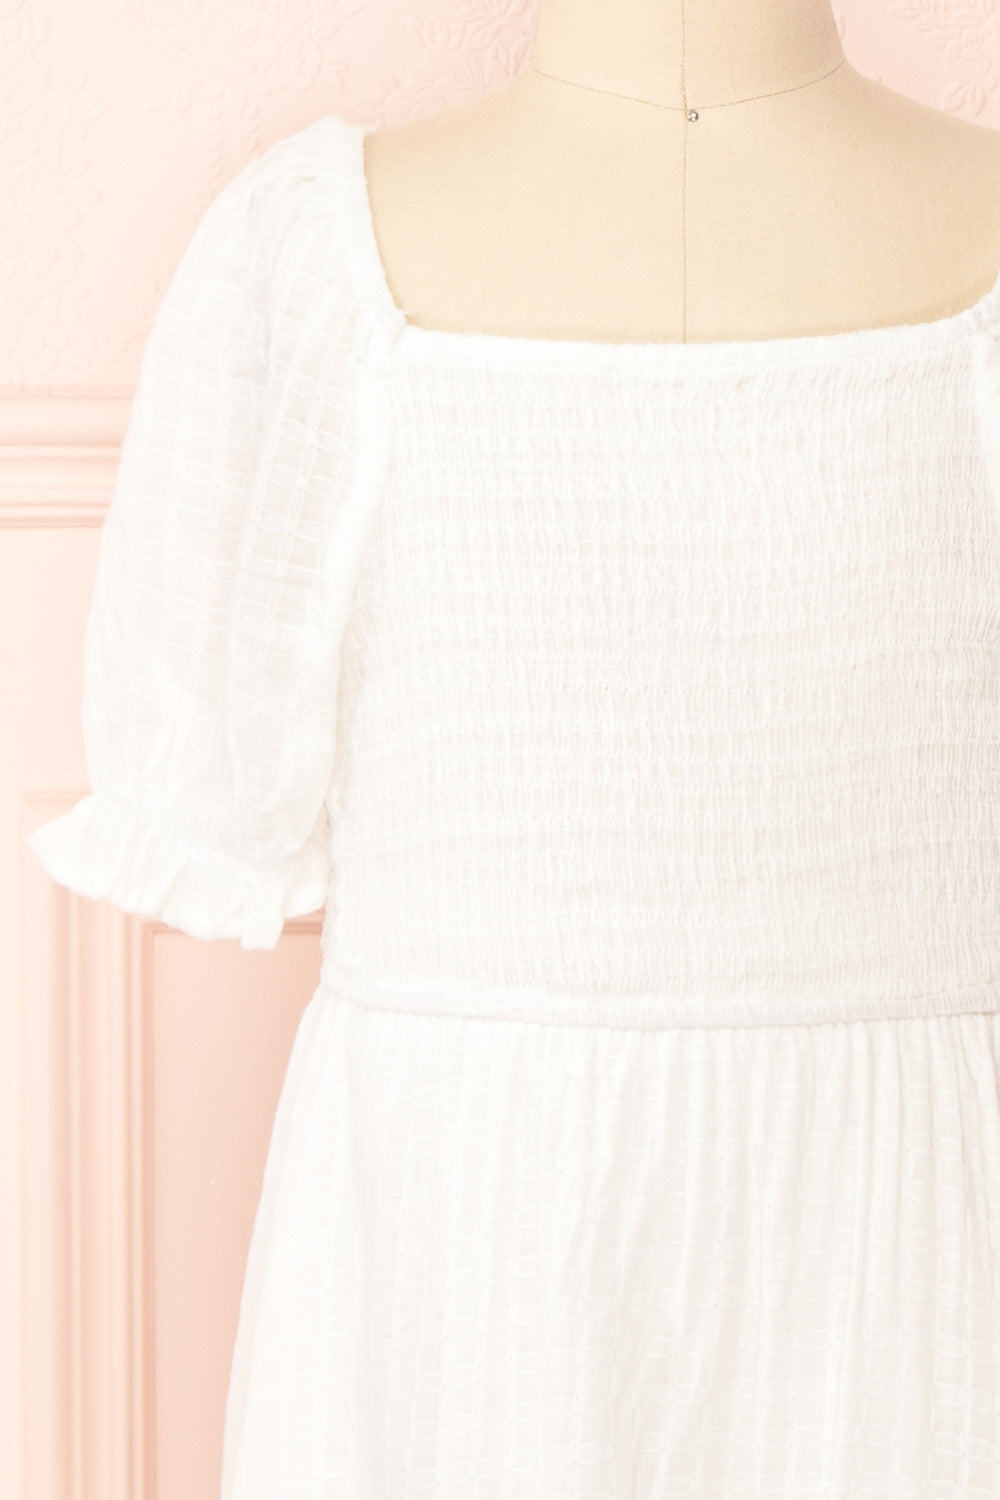 Undume Mini White Midi Dress w/ Square Neckline | Boutique 1861 front close-up